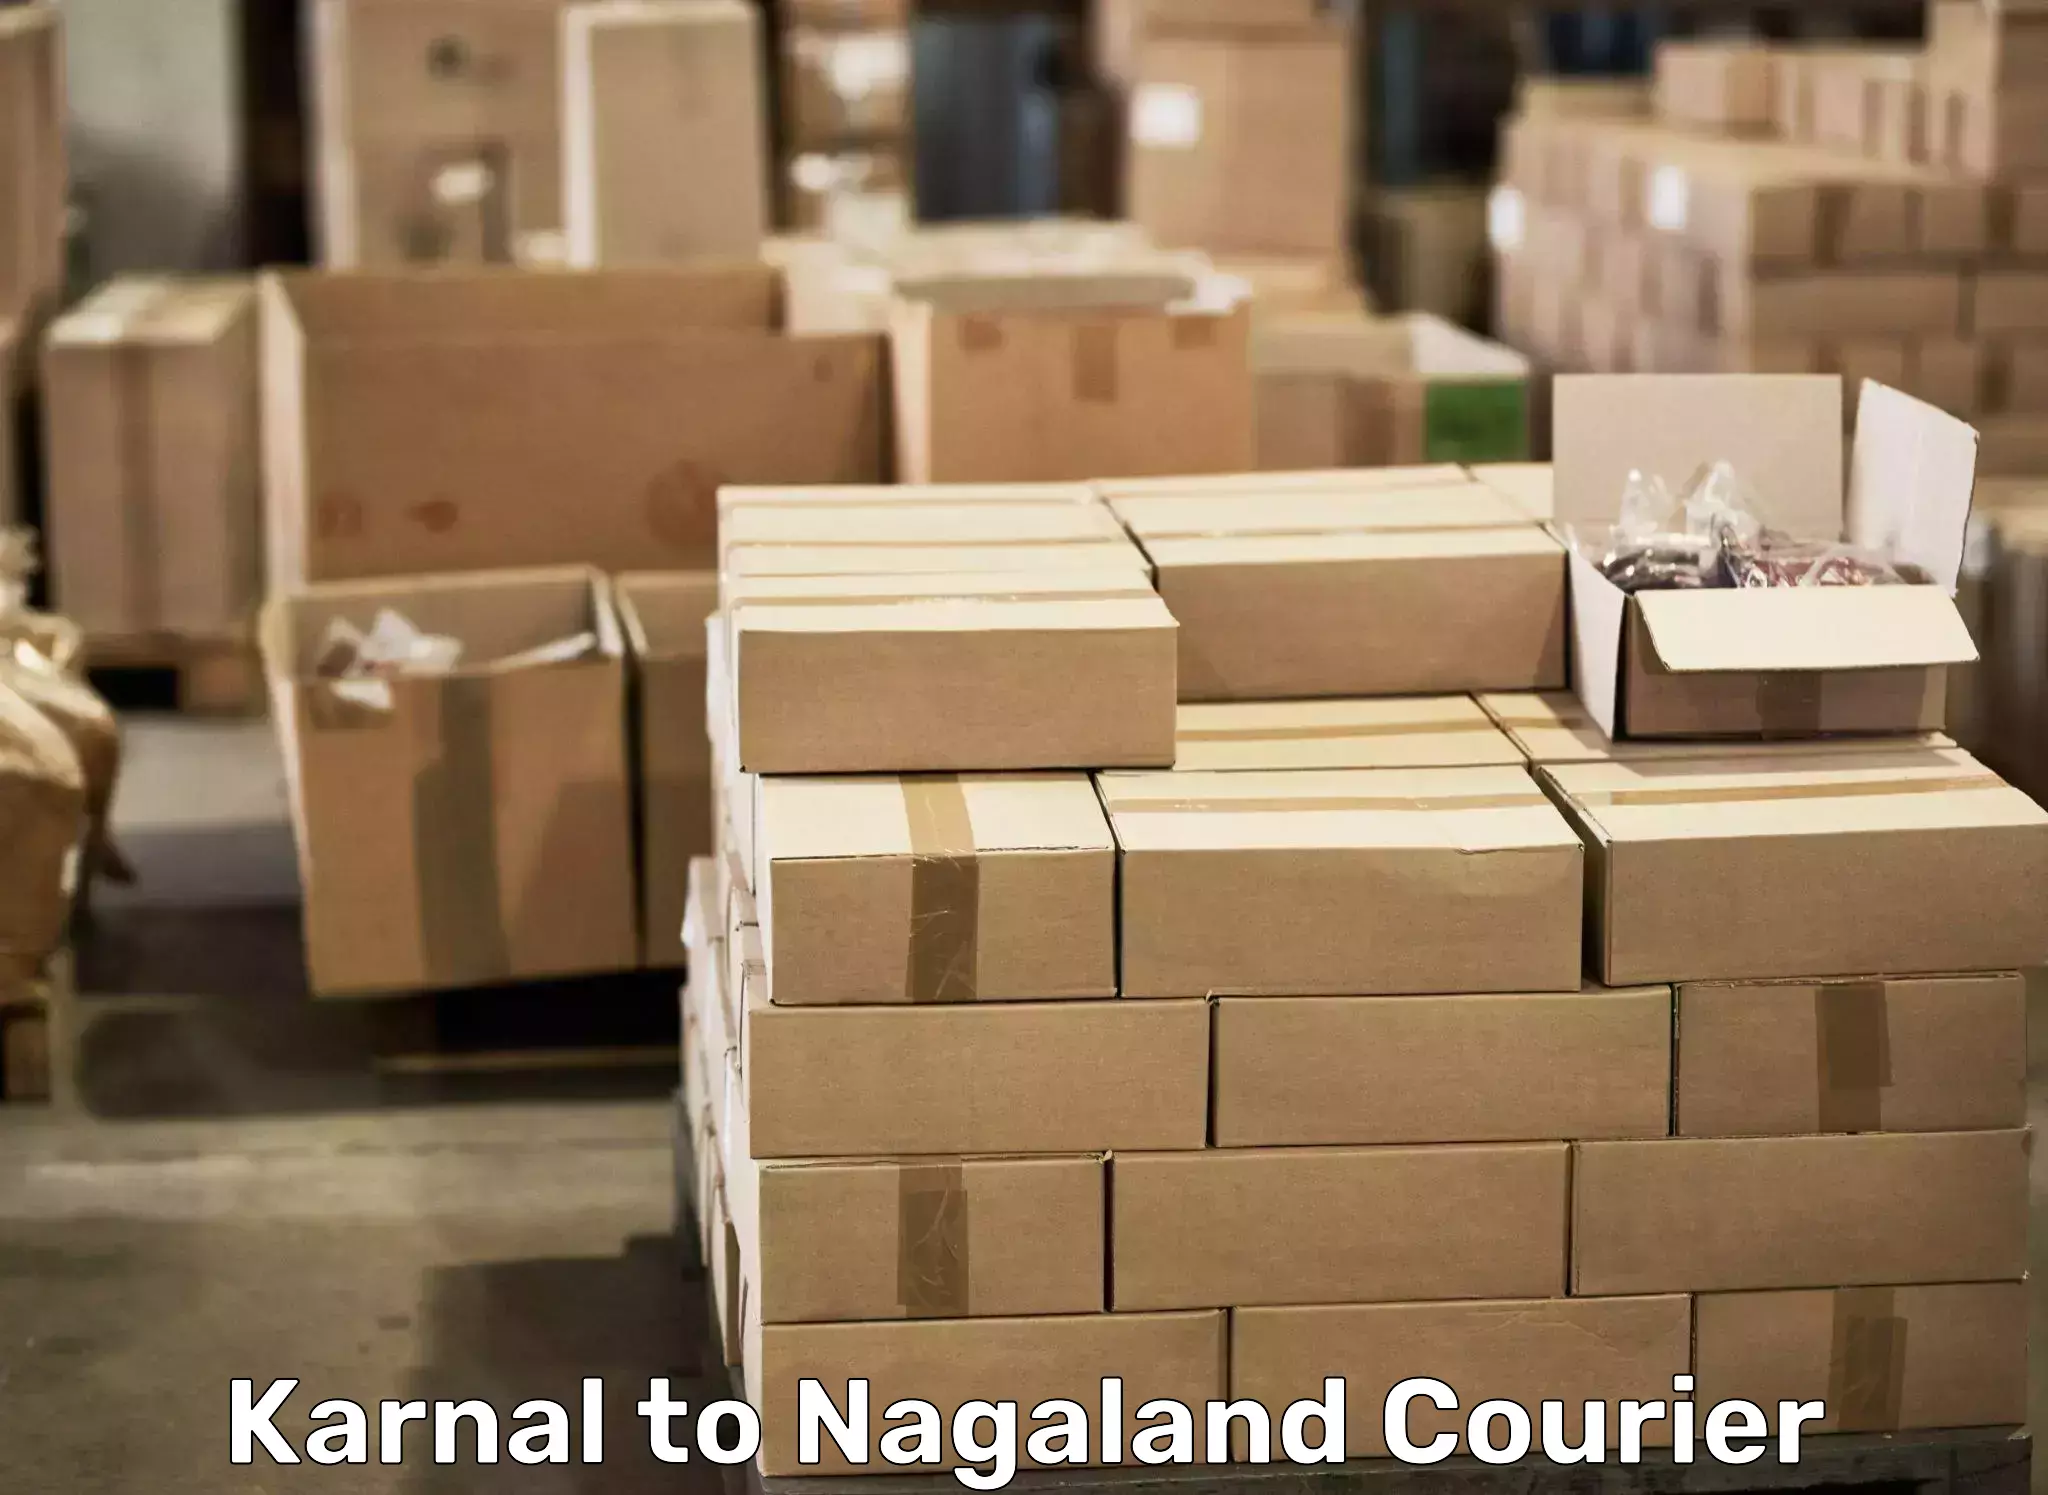 Professional moving company Karnal to Nagaland